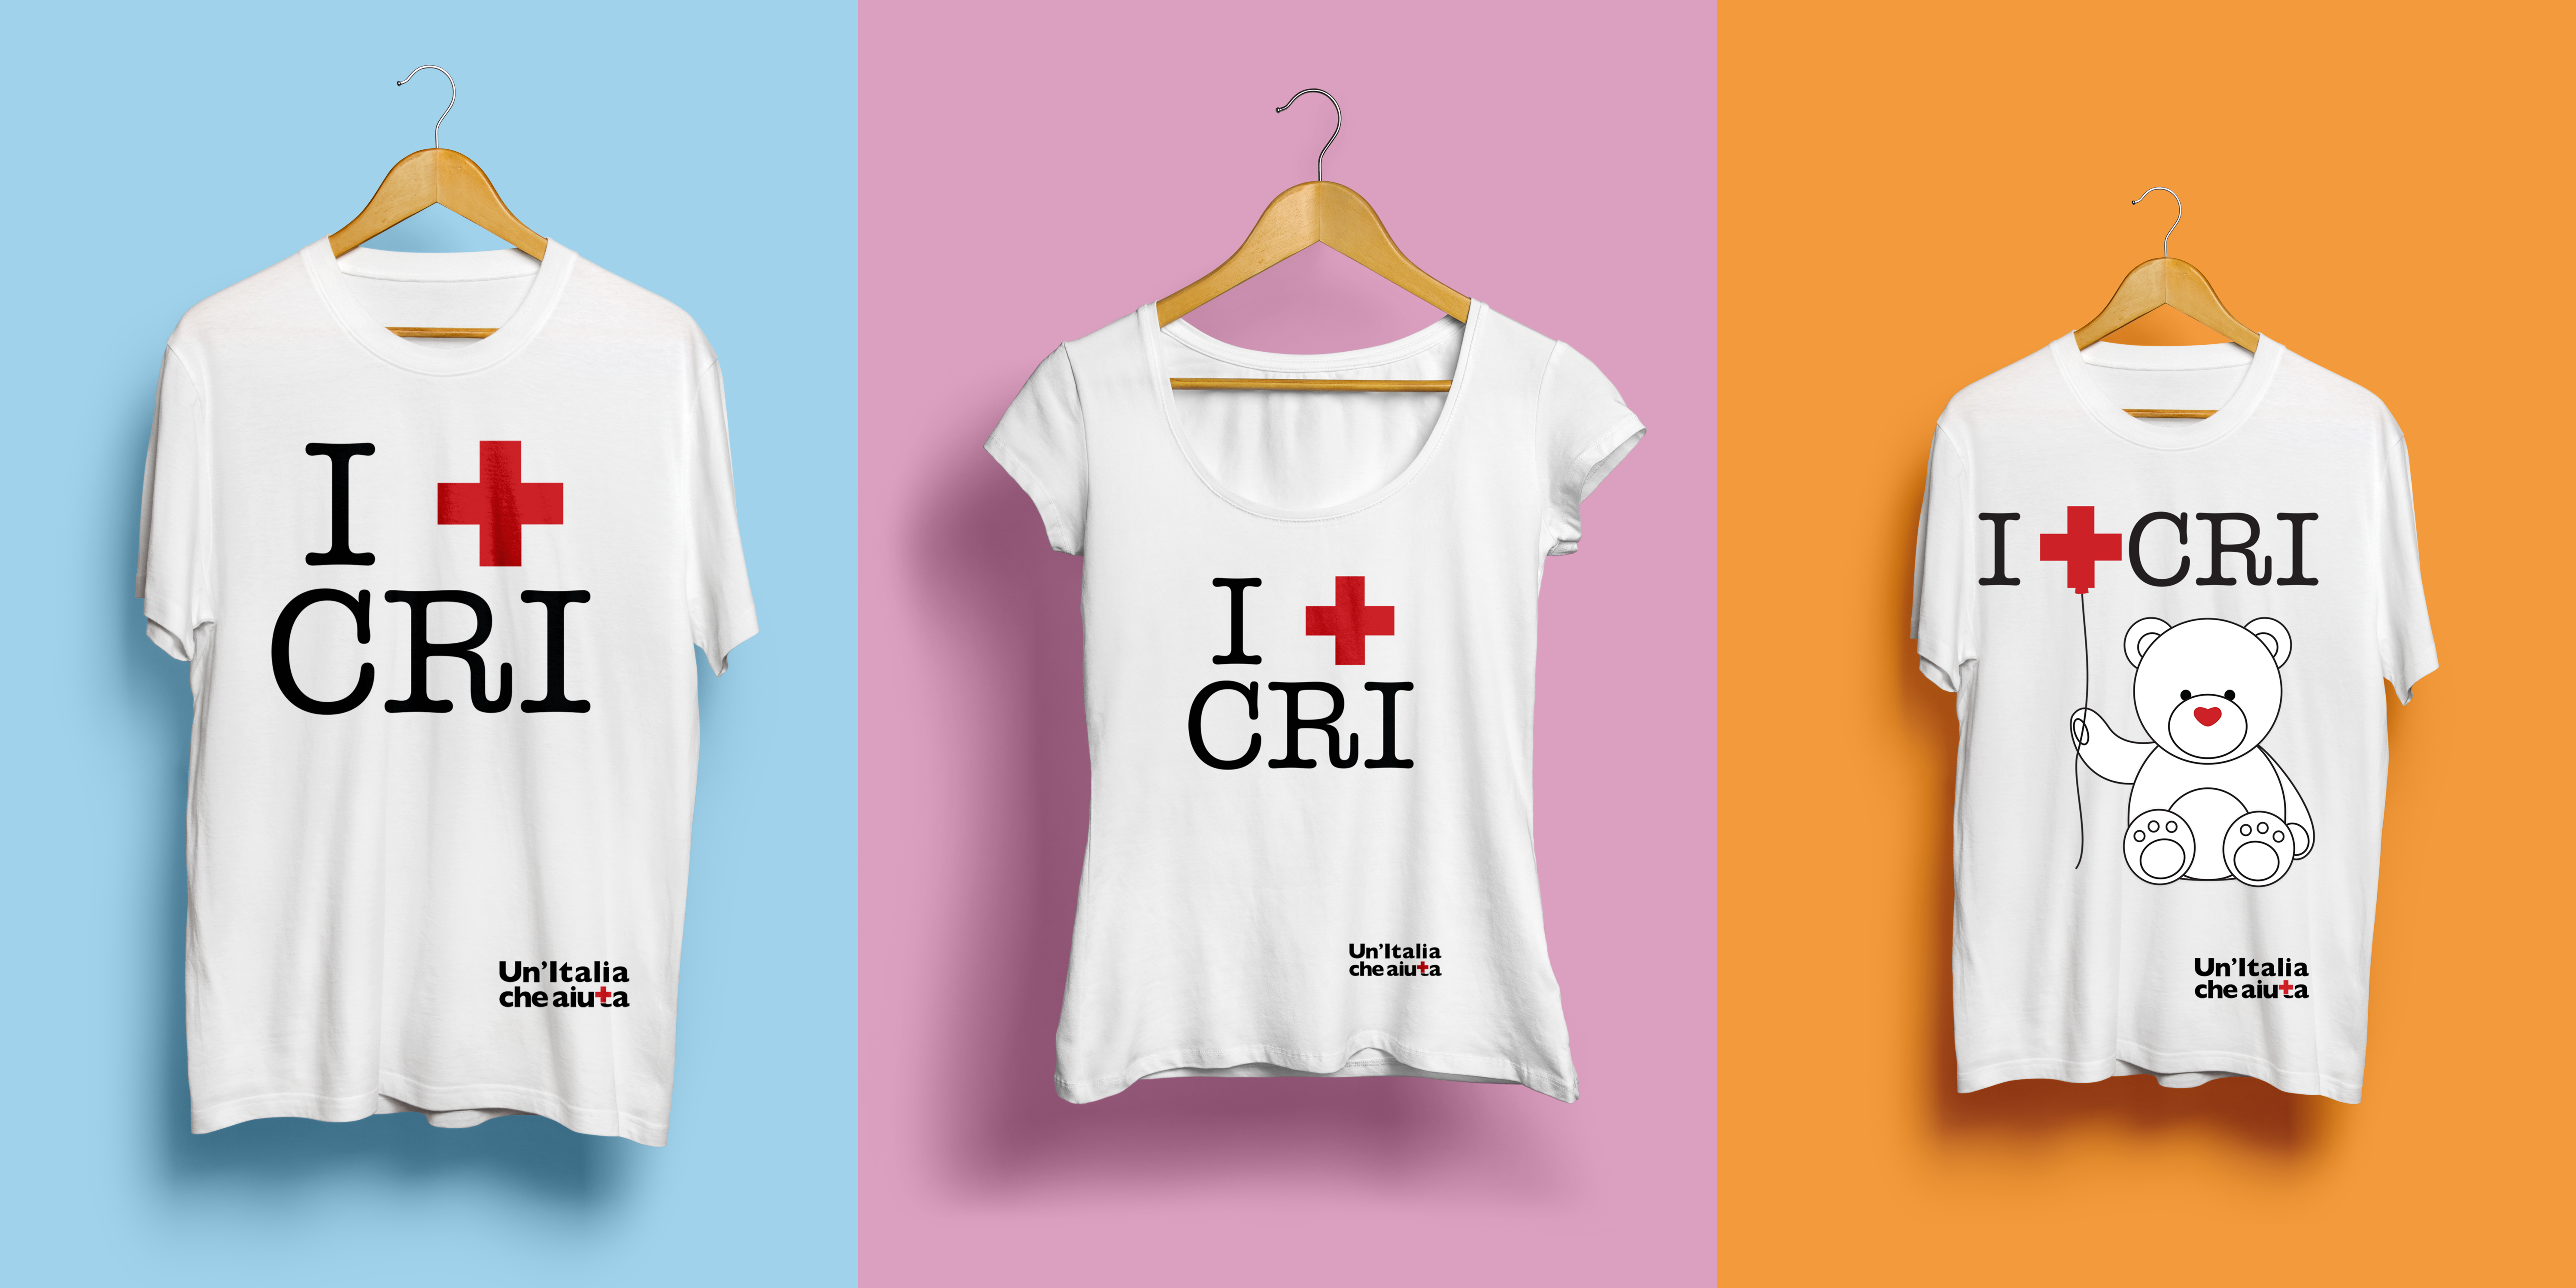 Anteprima maglietta "I + CRI"